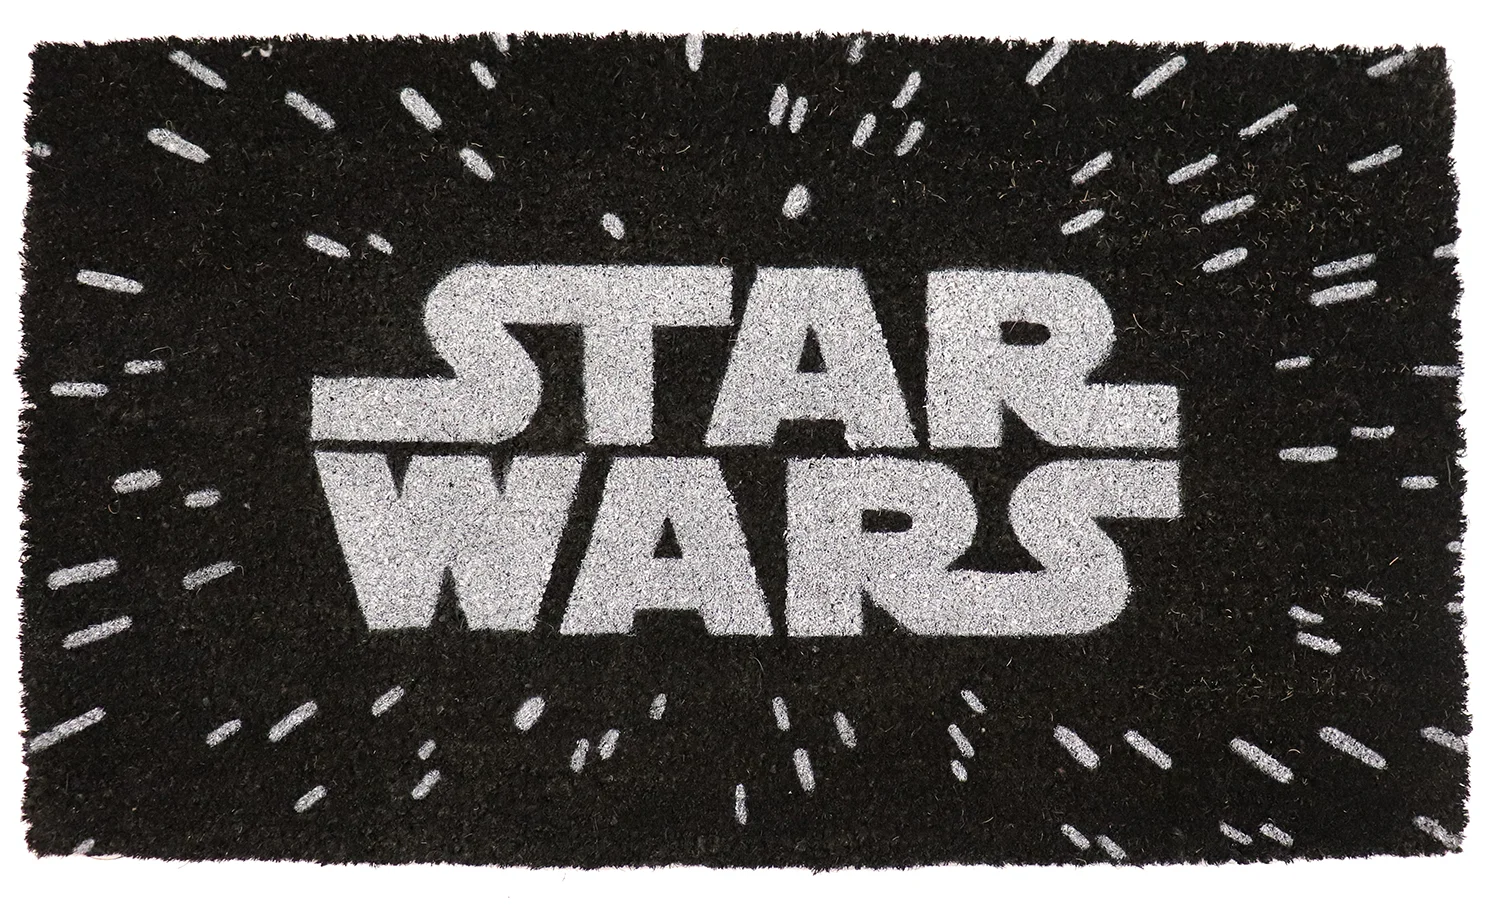 Star Wars - Logo (17"x29" Doormat)